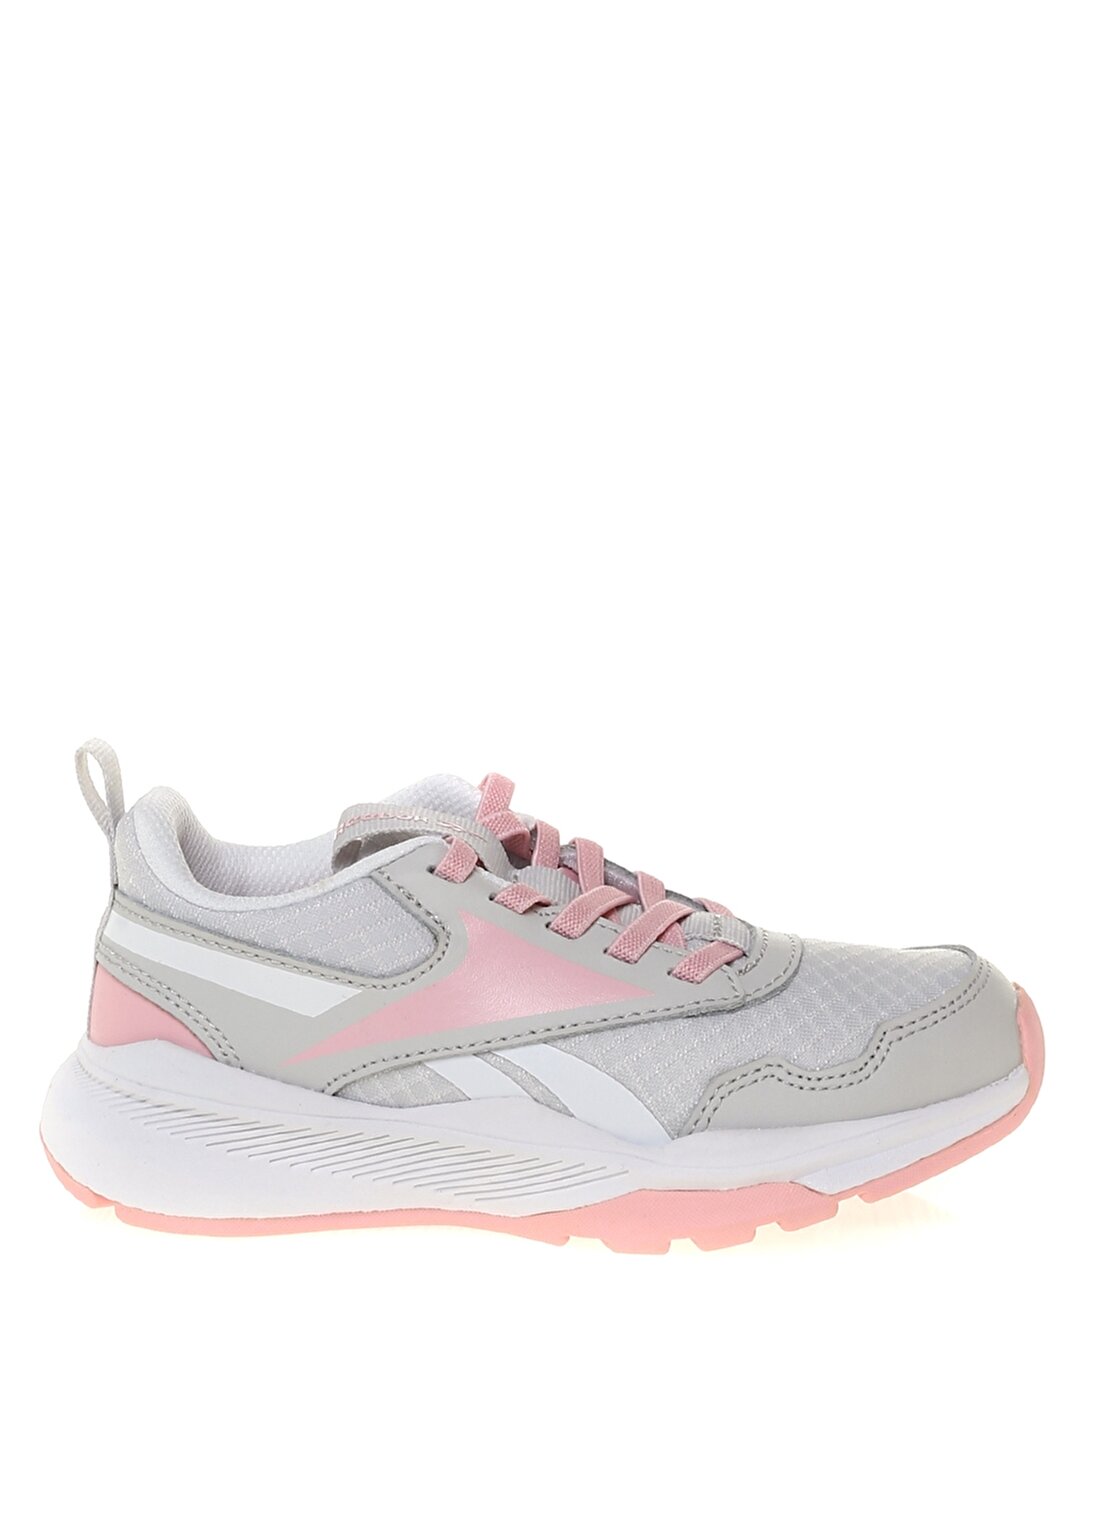 Reebok S29122 REEBOK XT SPRINTER 2.0 ALT Gri - Pembe - Beyaz Kadın Yürüyüş Ayakkabısı